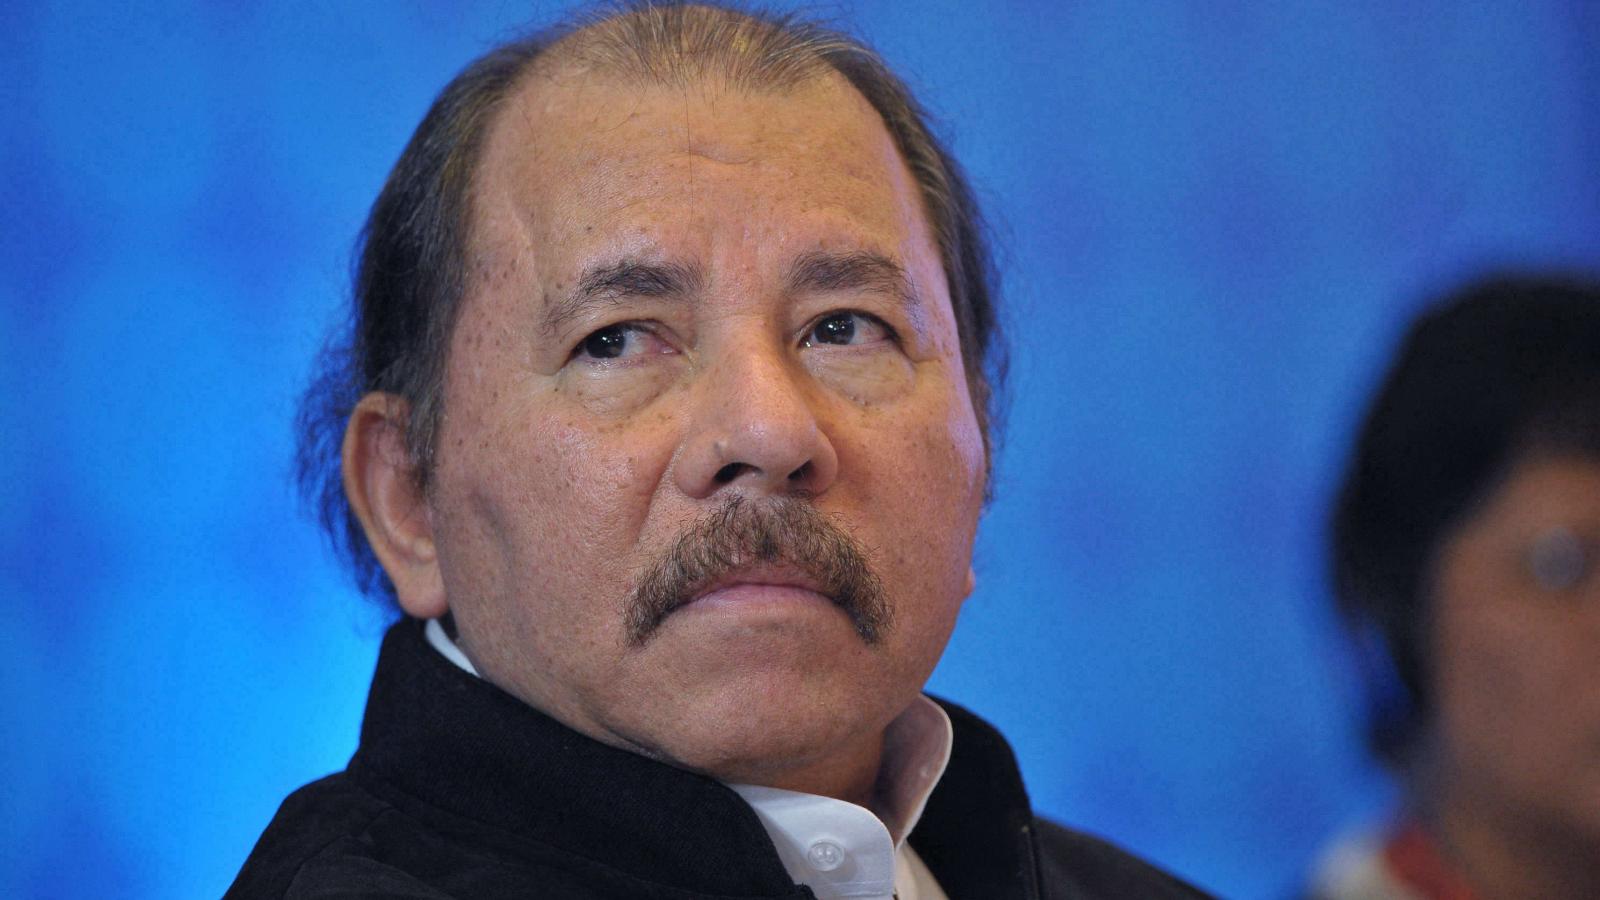 Hermano de Daniel Ortega pide contribuir a la paz